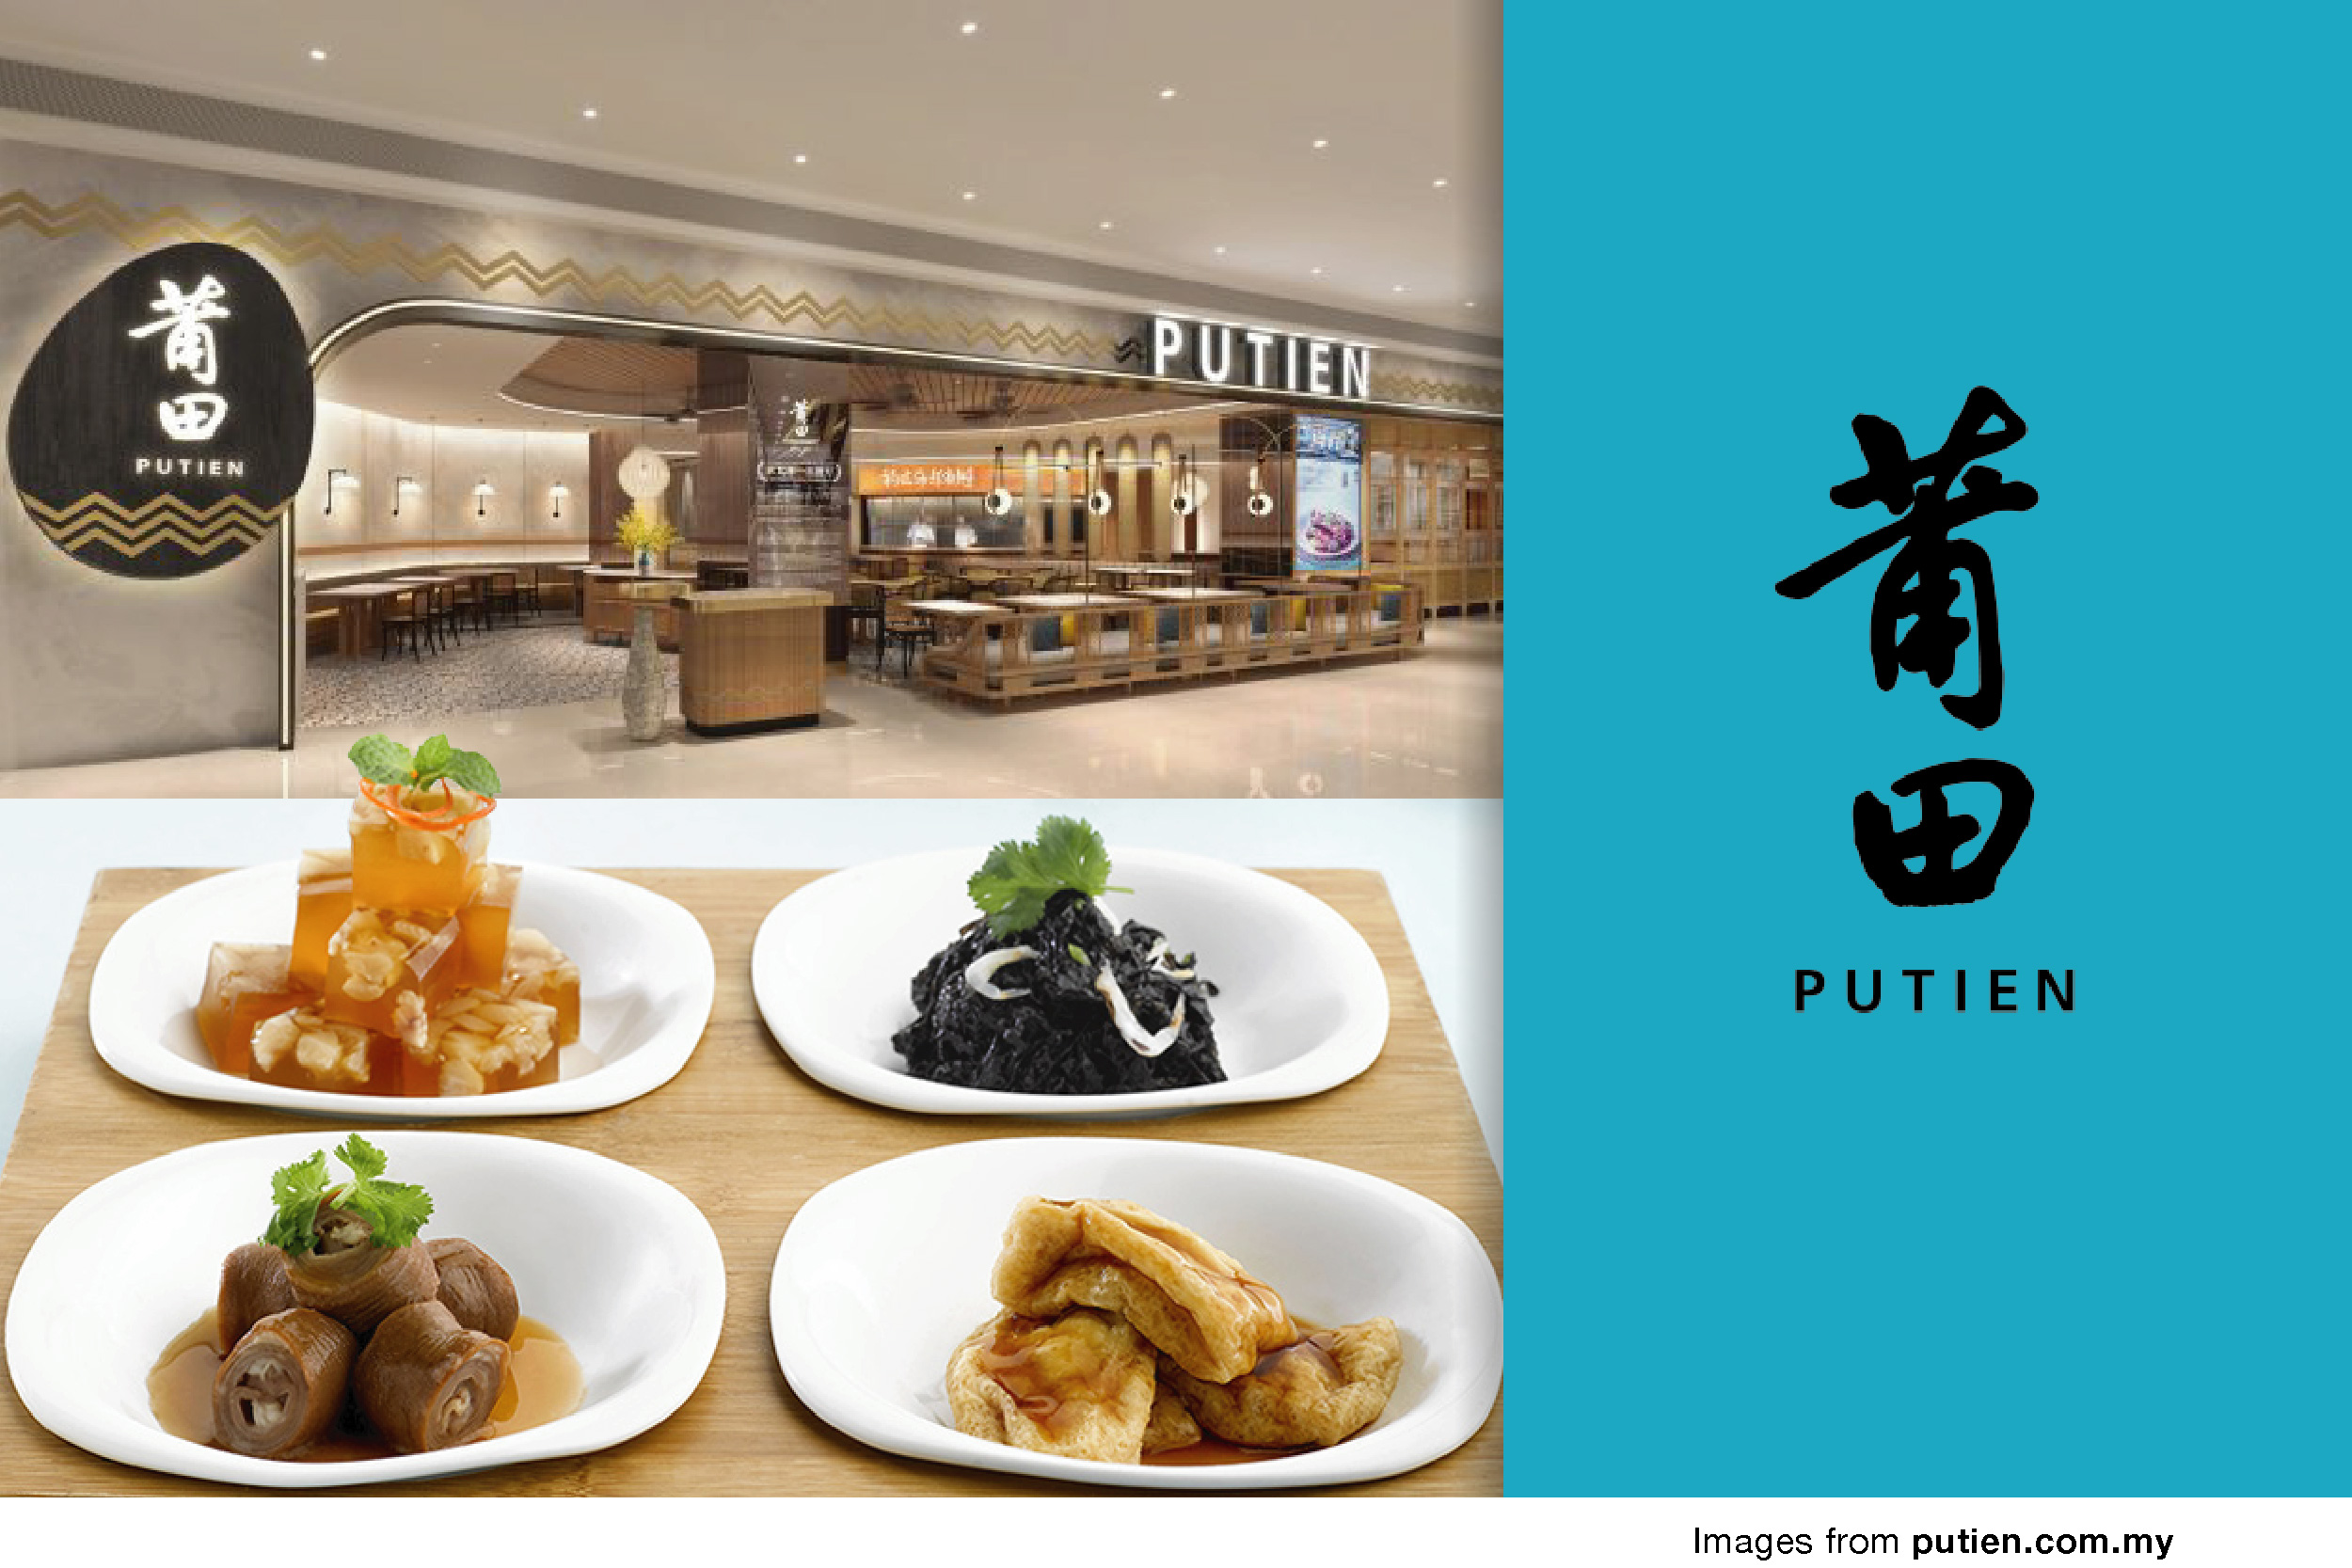 Putien – One Michelin Star restaurant